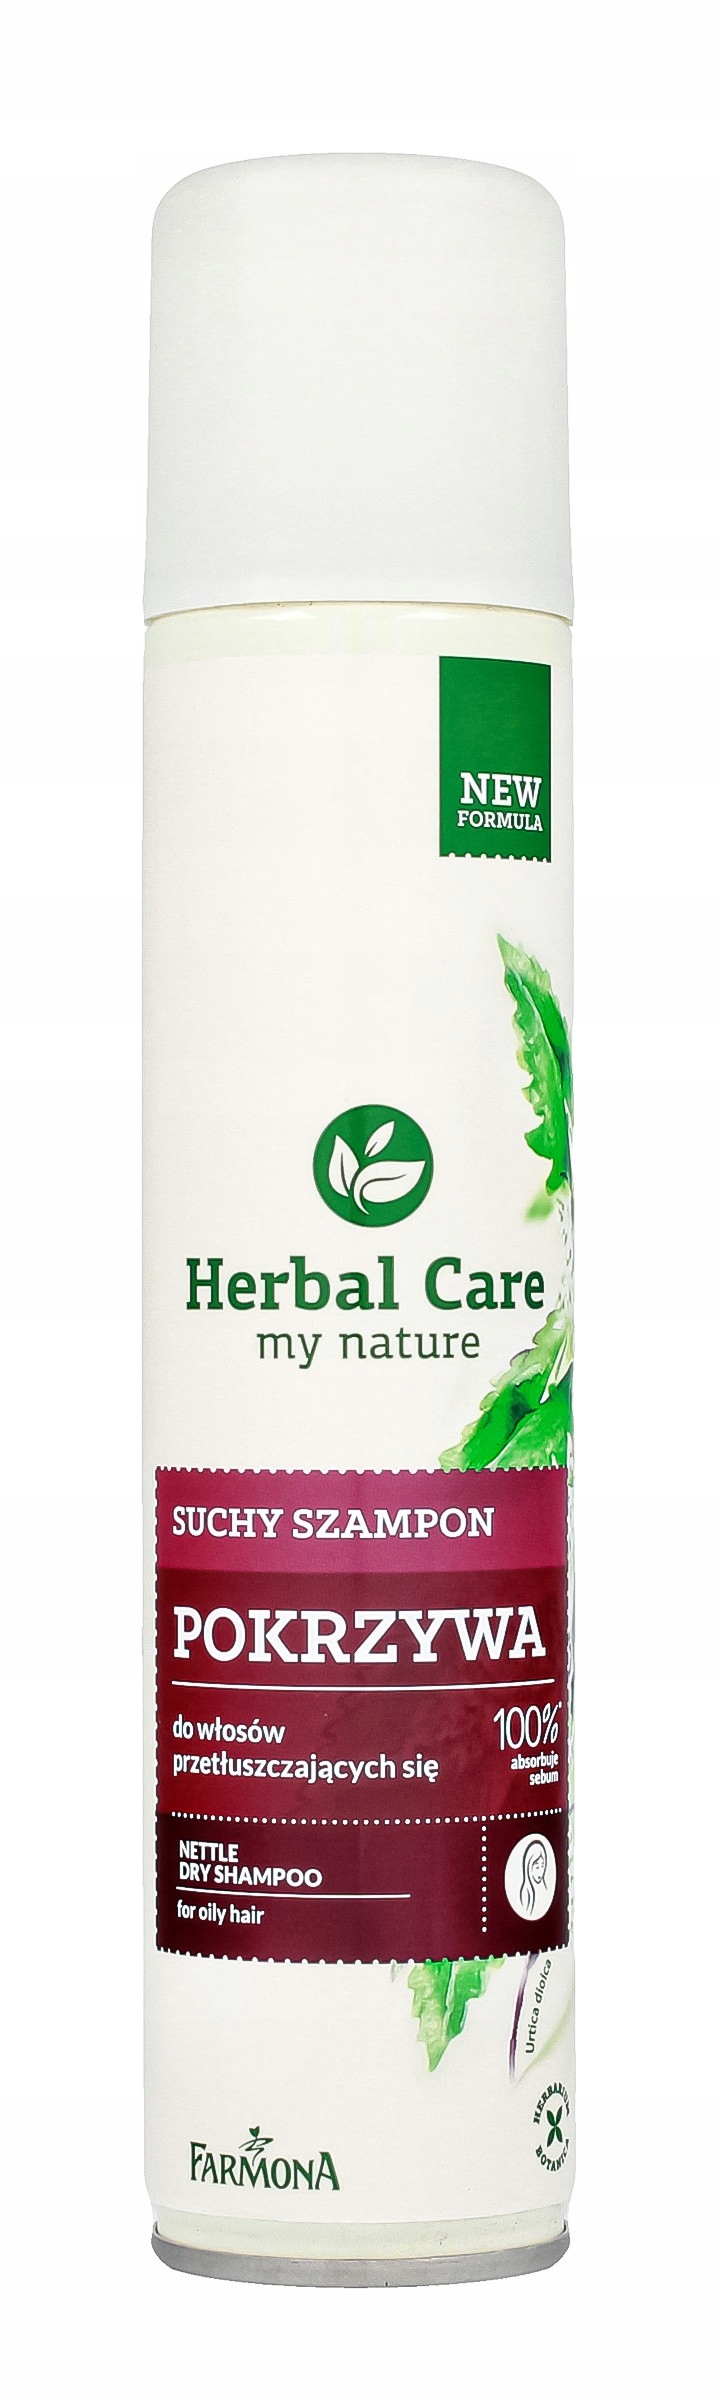 farmona herbal suchy szampon z pokrzywą